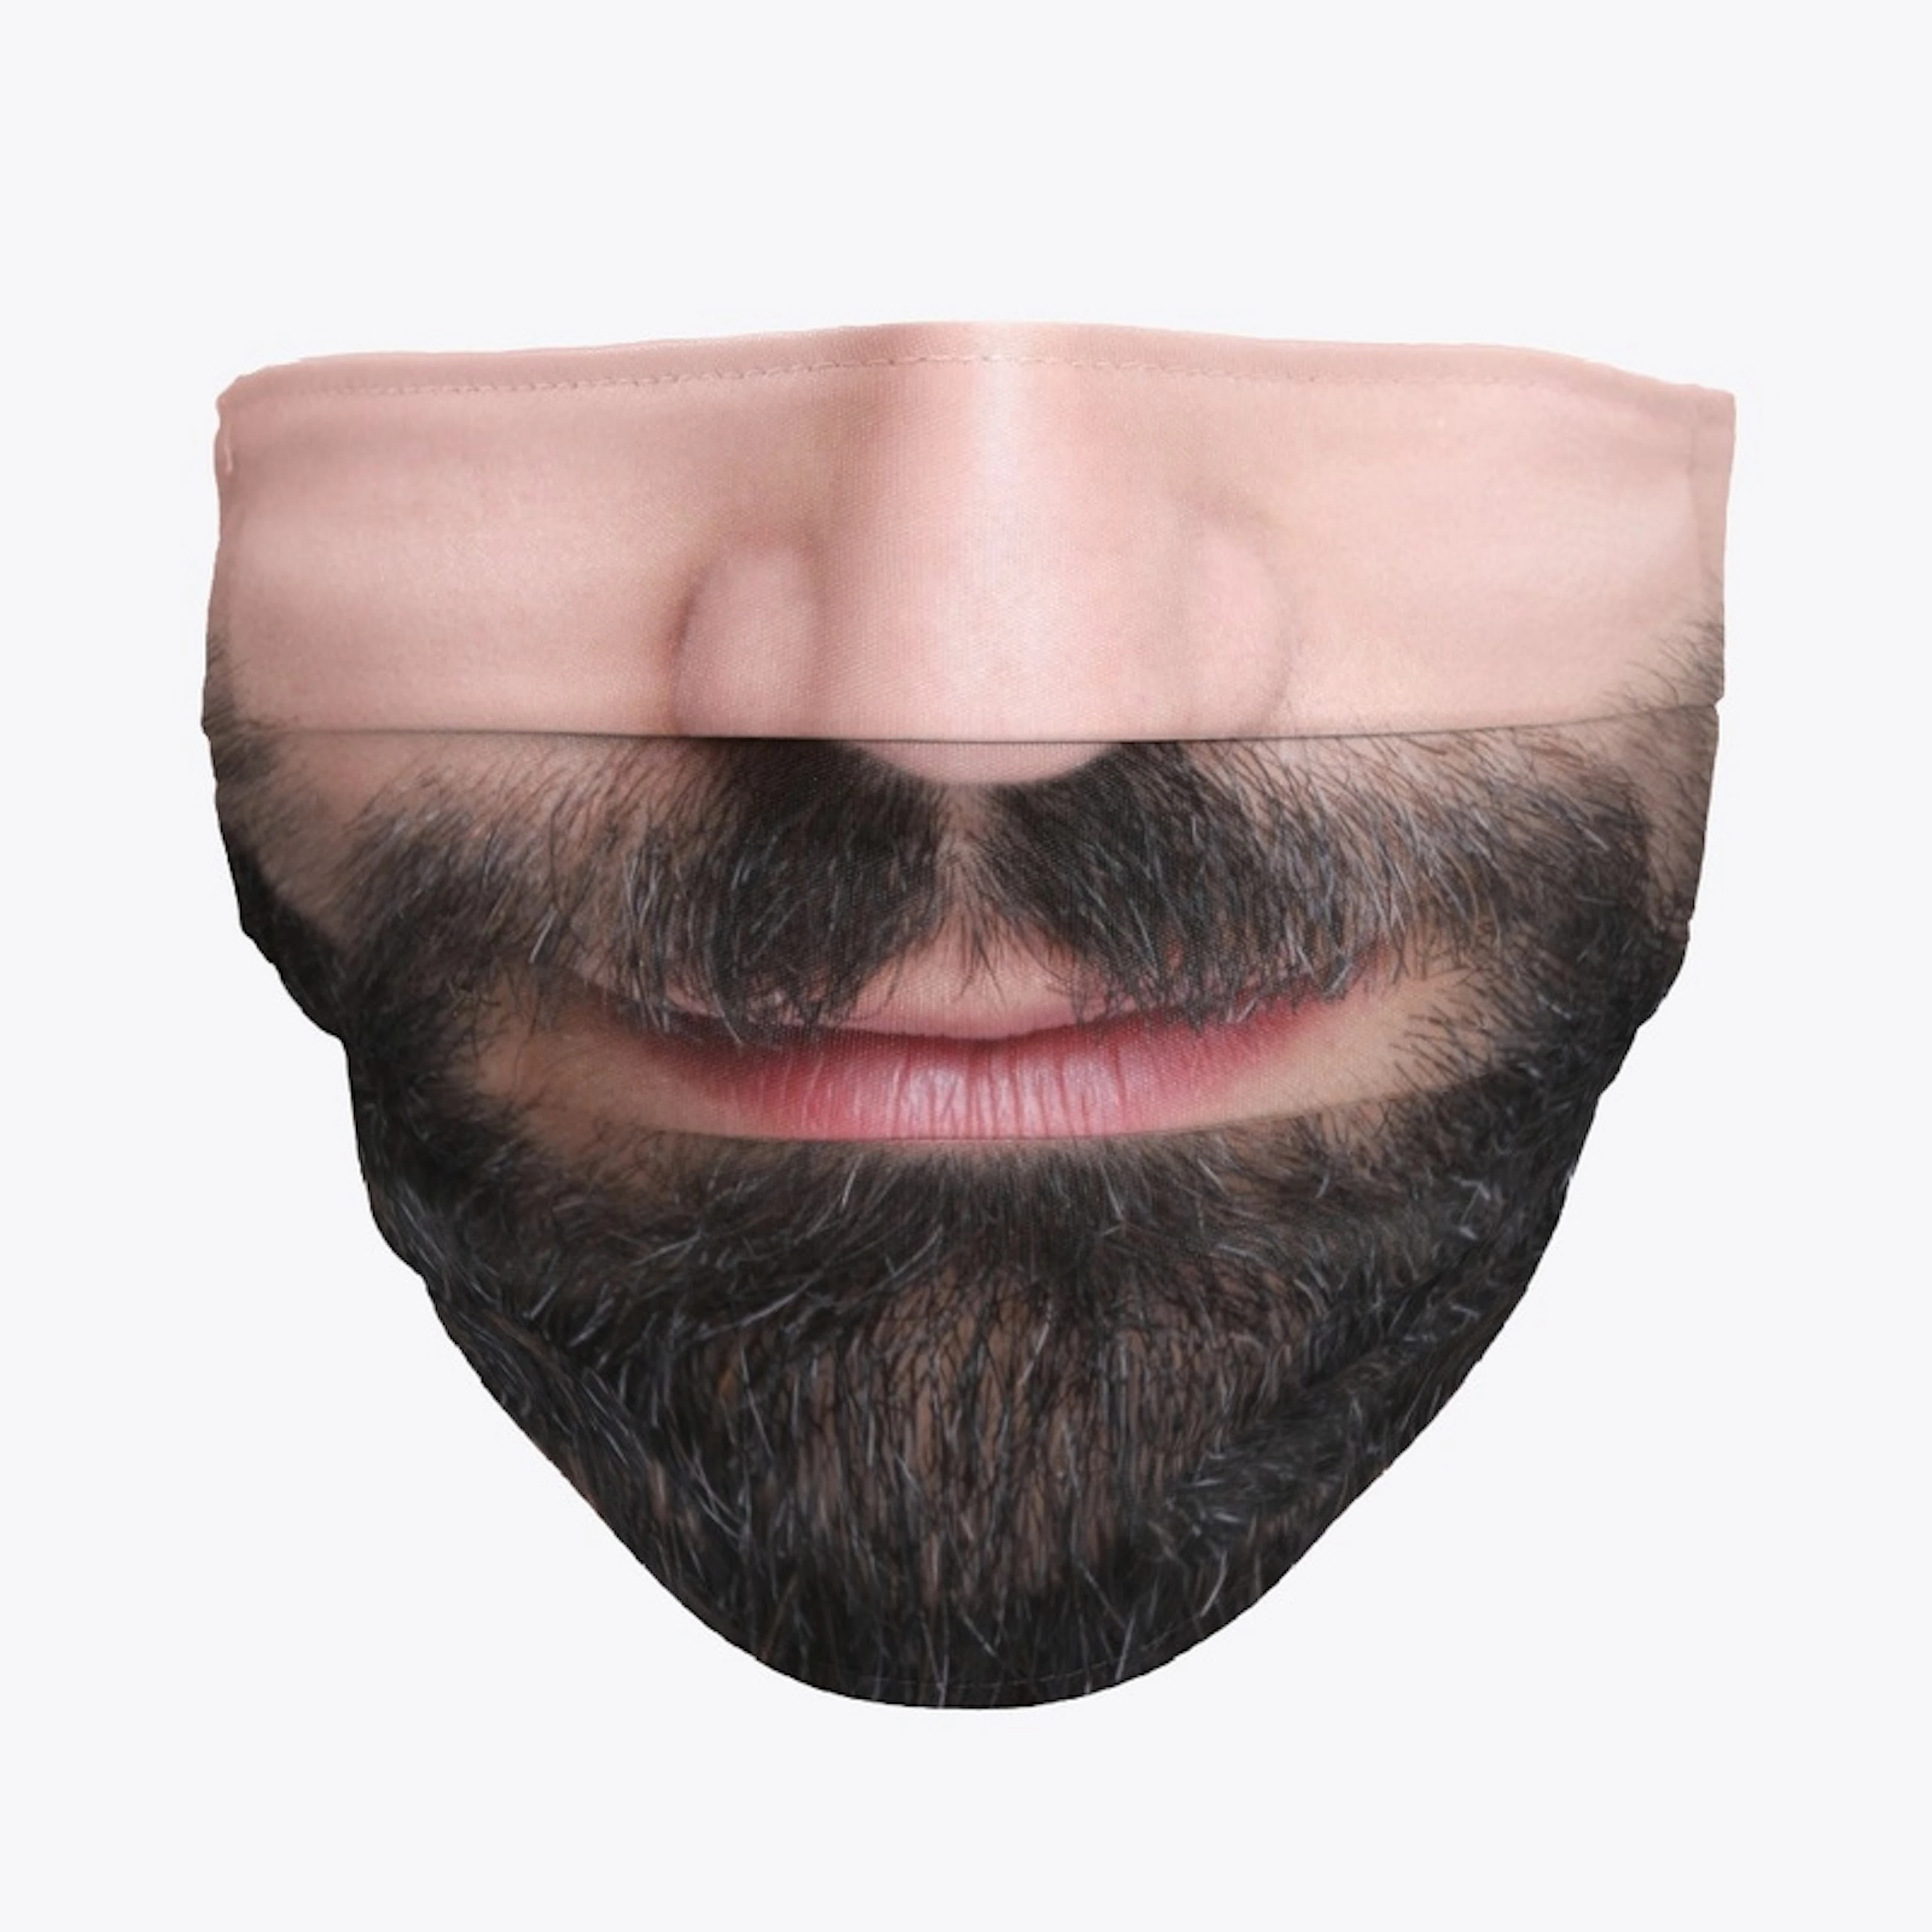 Smiling man's beard printed mask